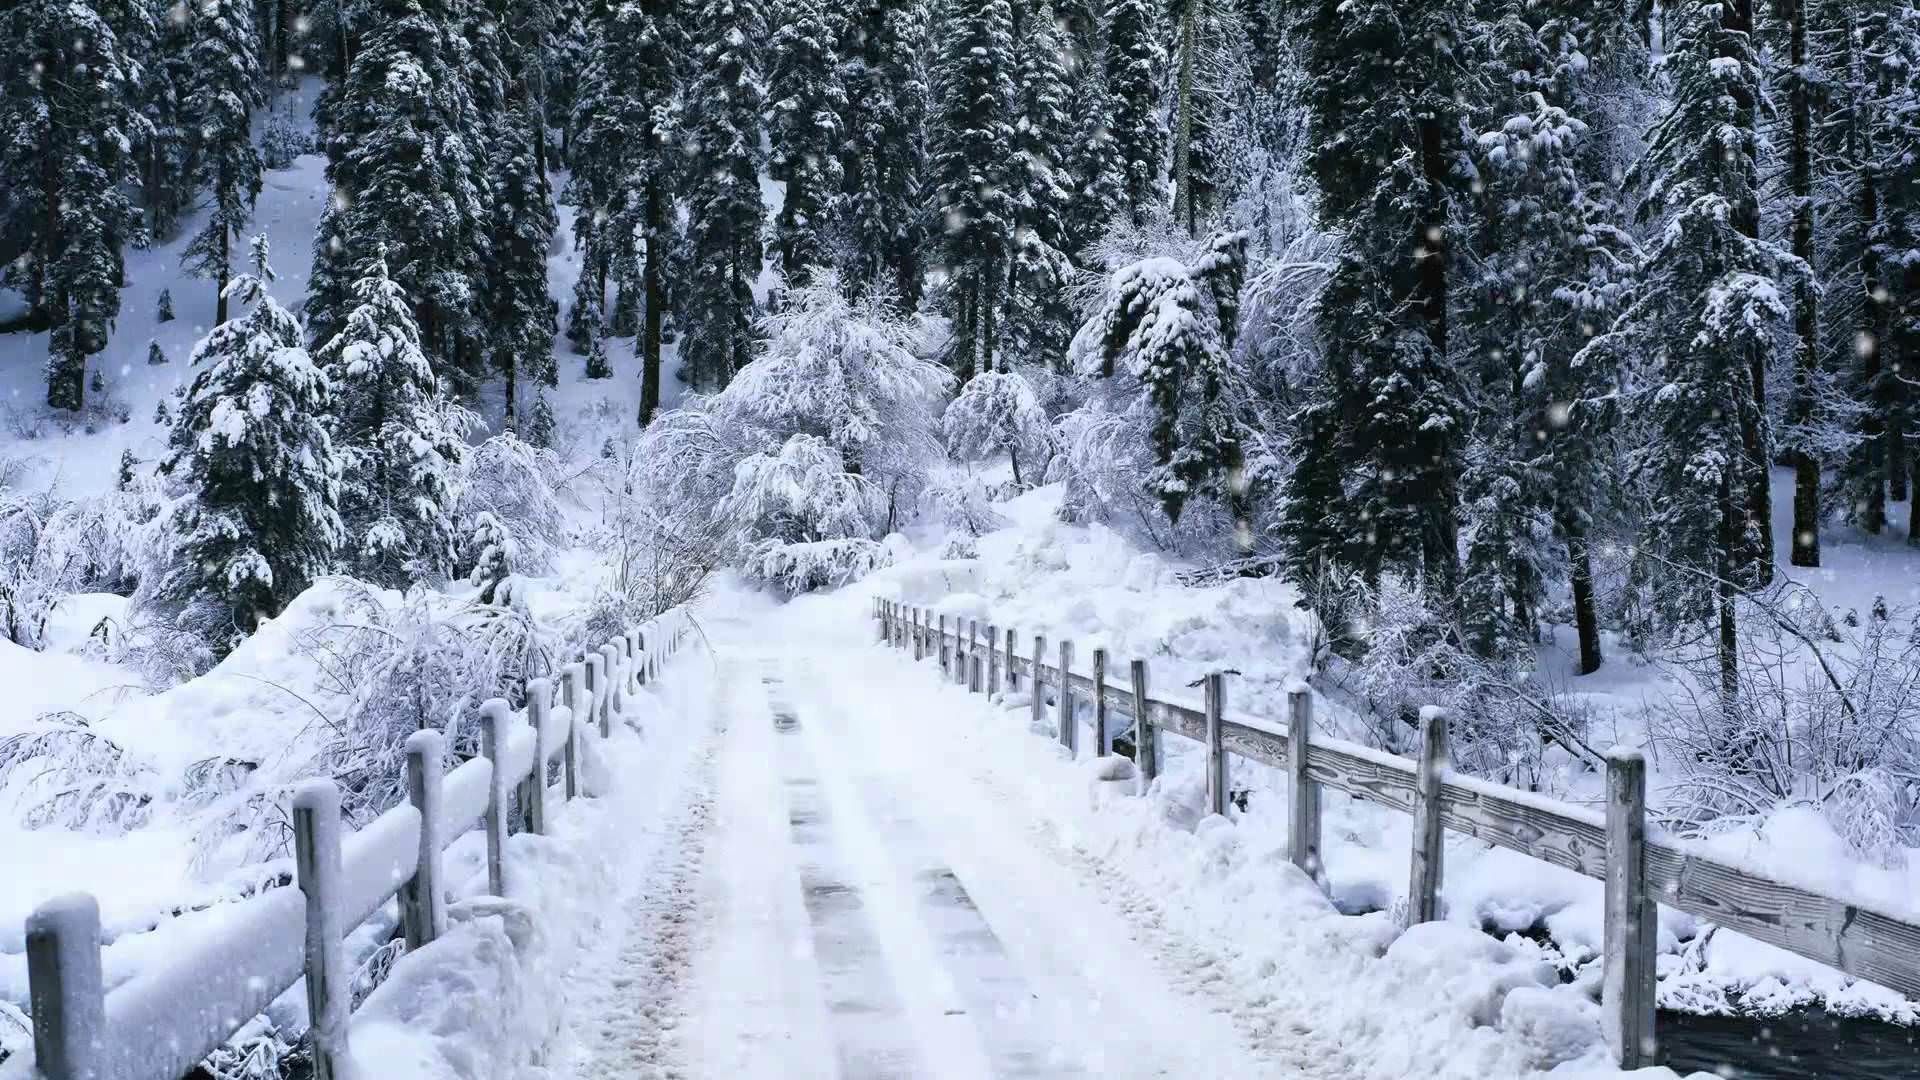 مناظر زیبای زمستانی